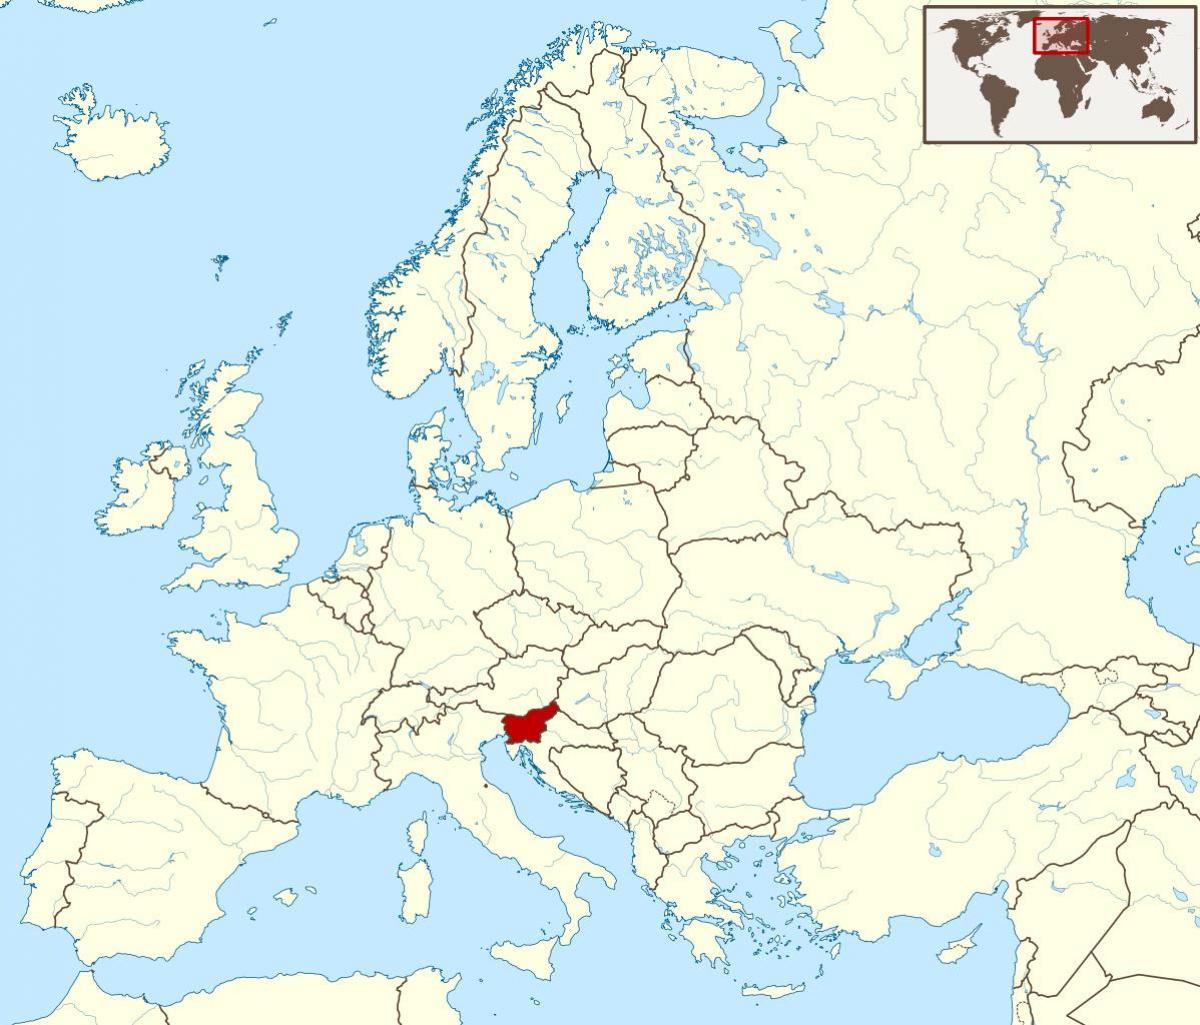 Slovenia lokasyon sa mapa ng mundo